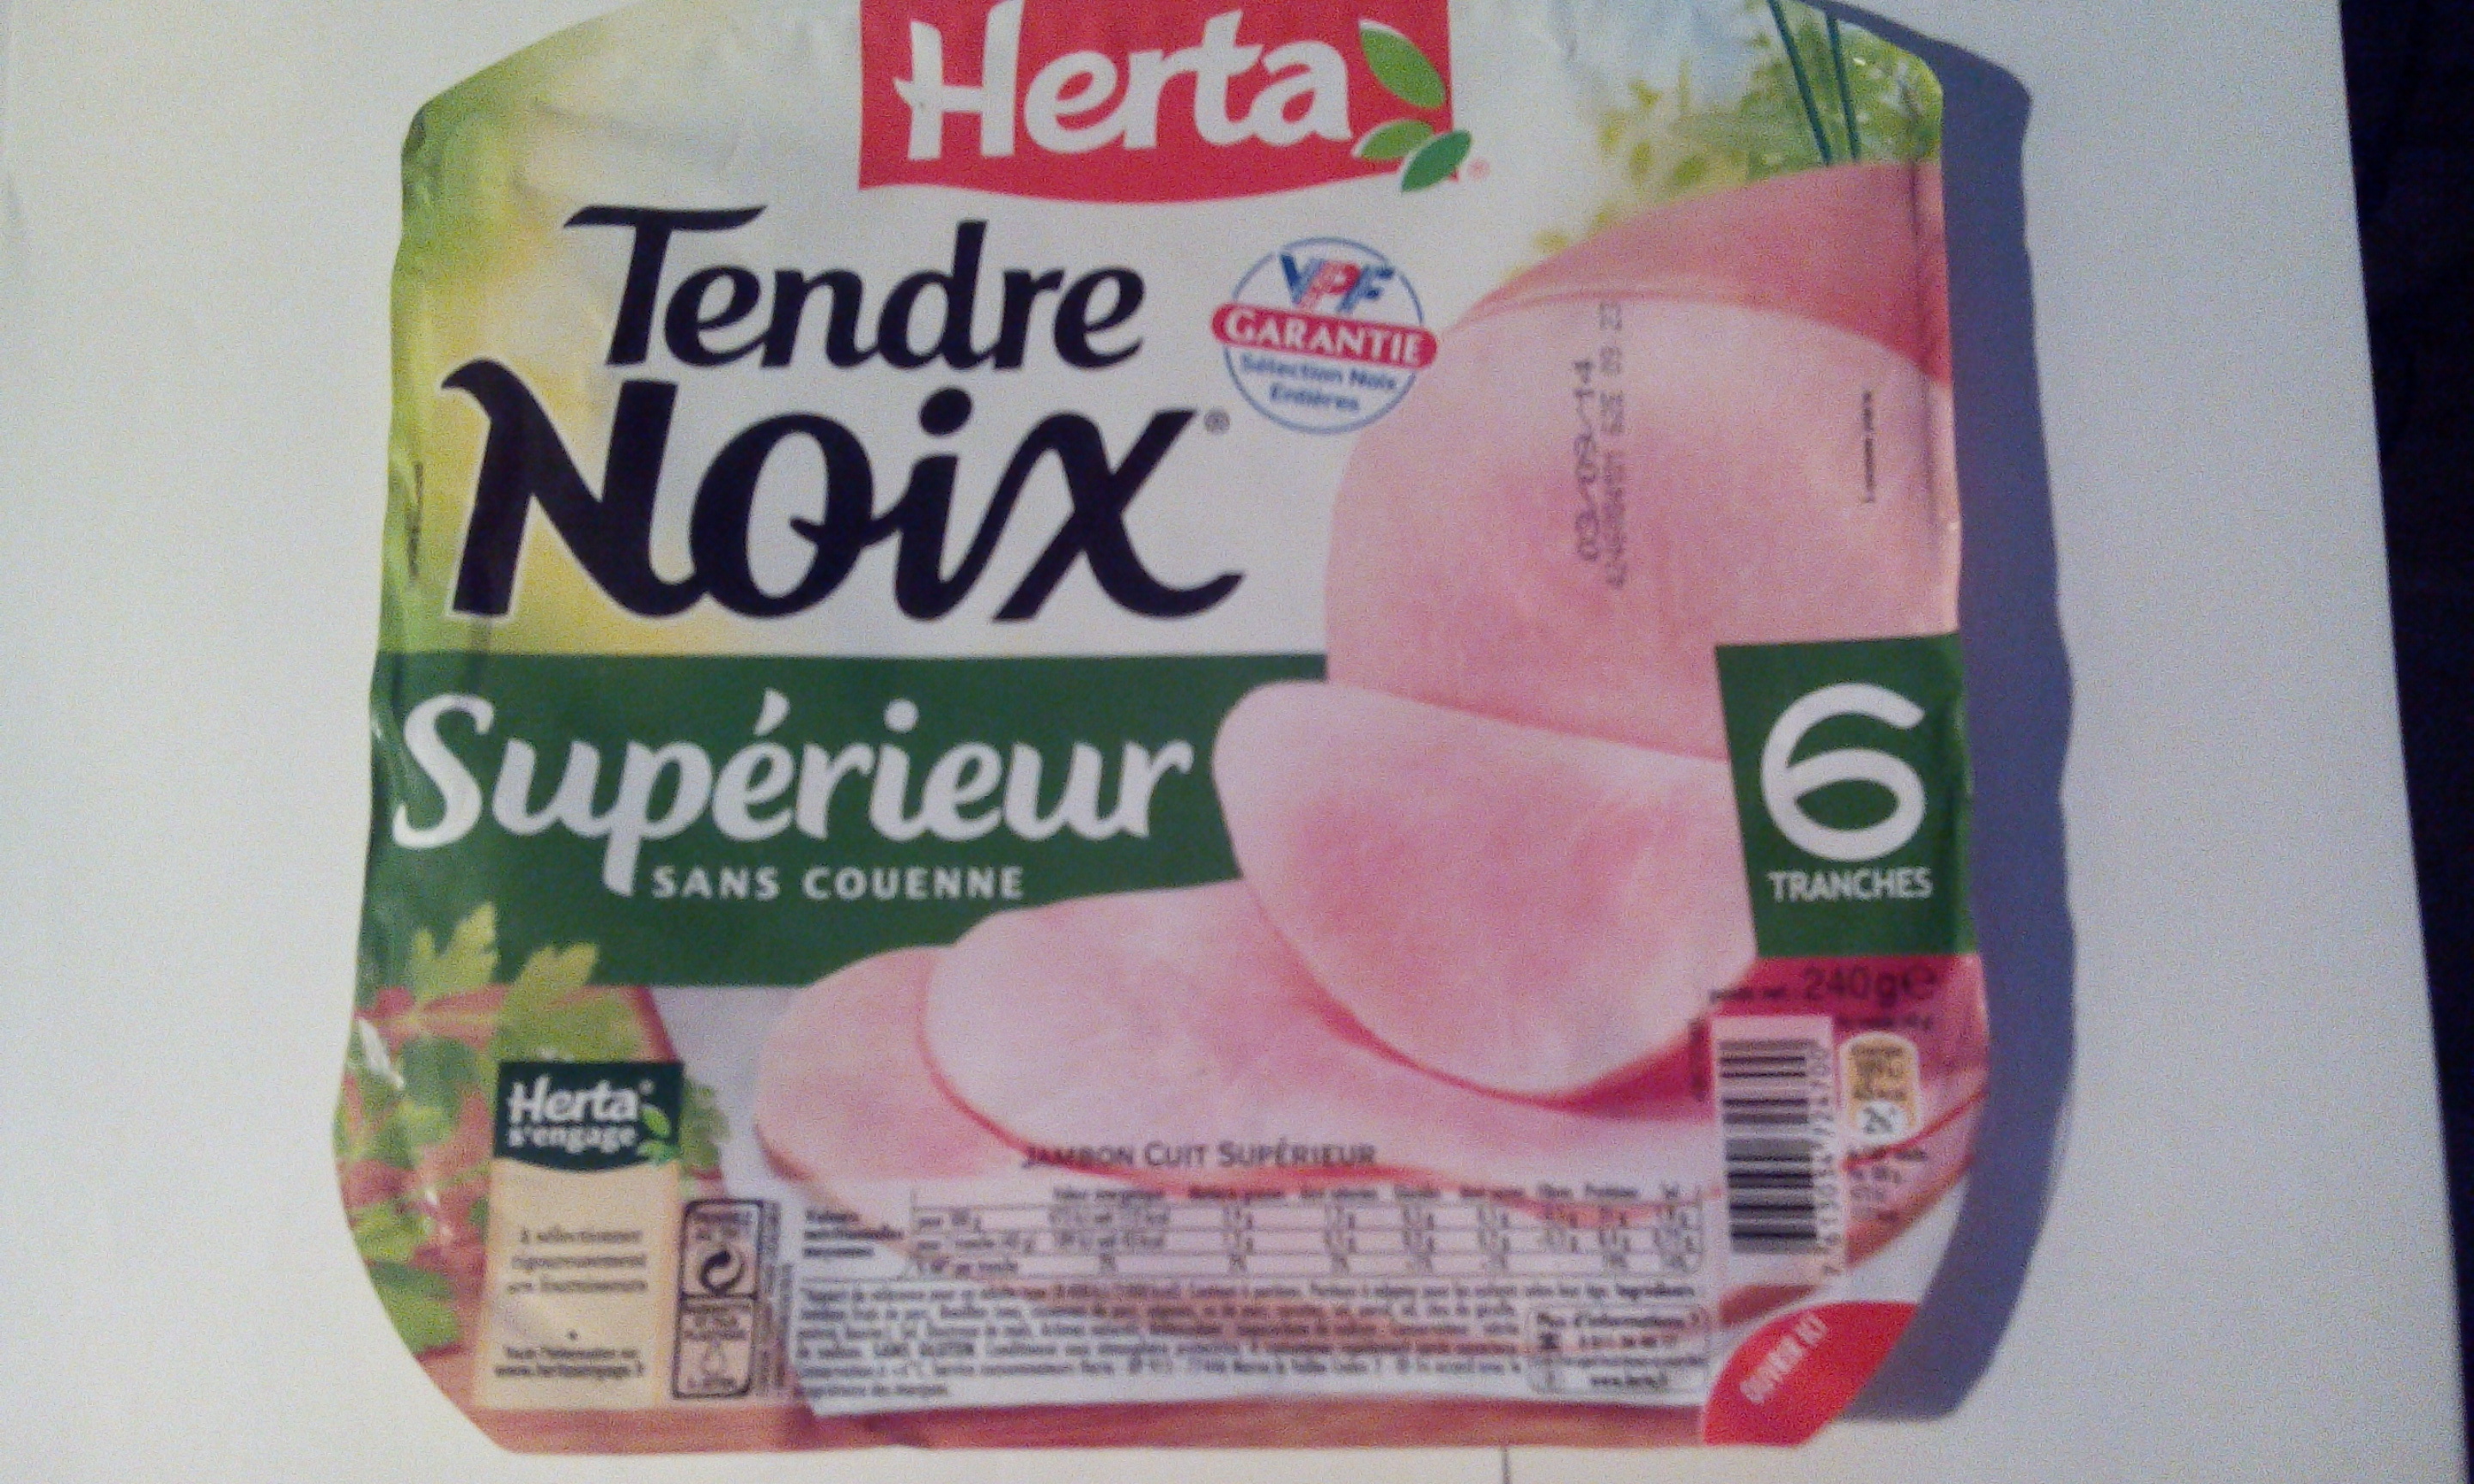 Tendre Noix, Supérieur Sans Couenne (6 Tranches) - Product - fr